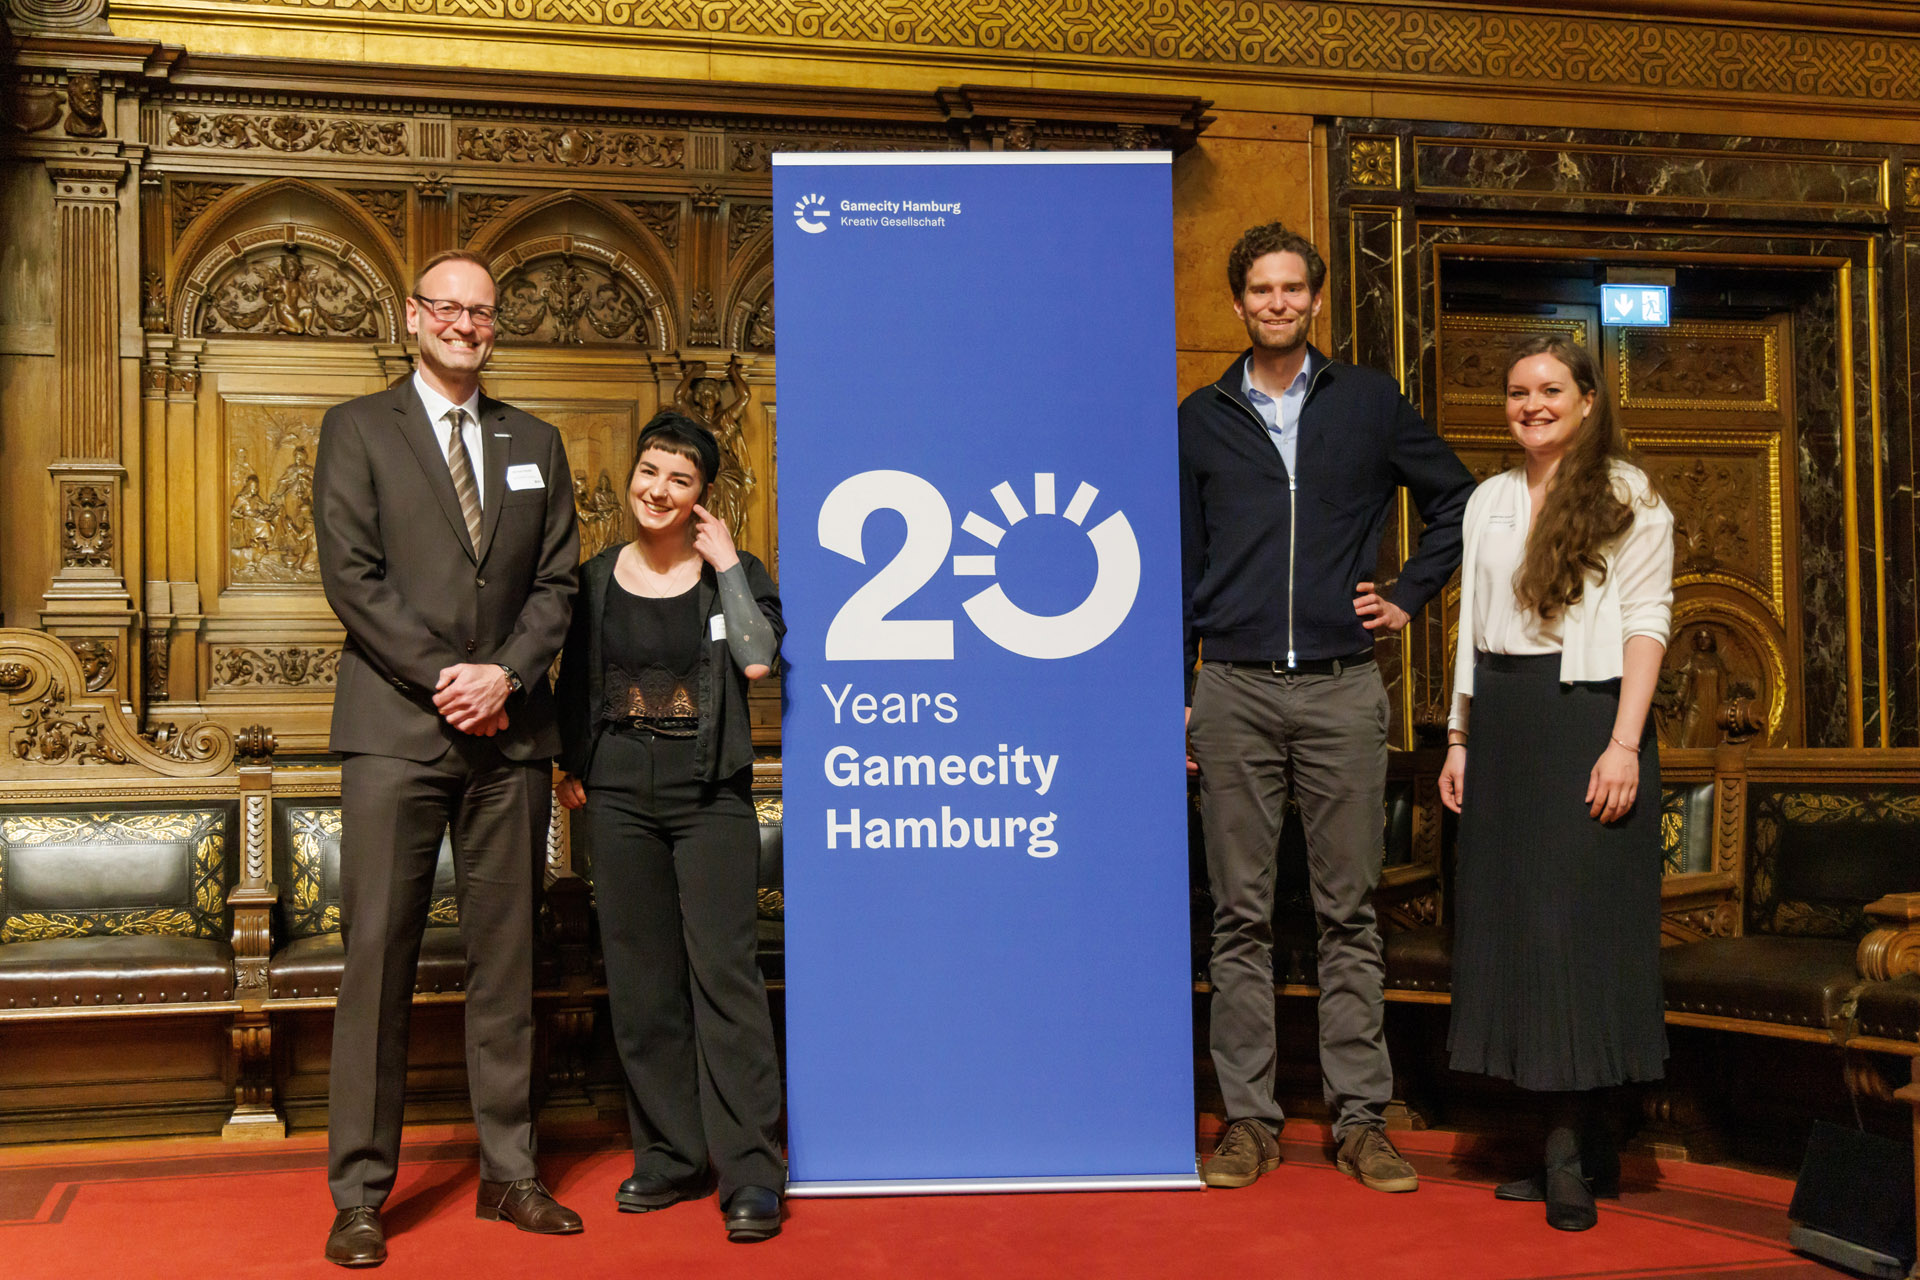 The panel (left to right): Michael Schade, Valentina Birke Margarete Schneider & Tobias Kringe / Photo by Marcelo Hernandez